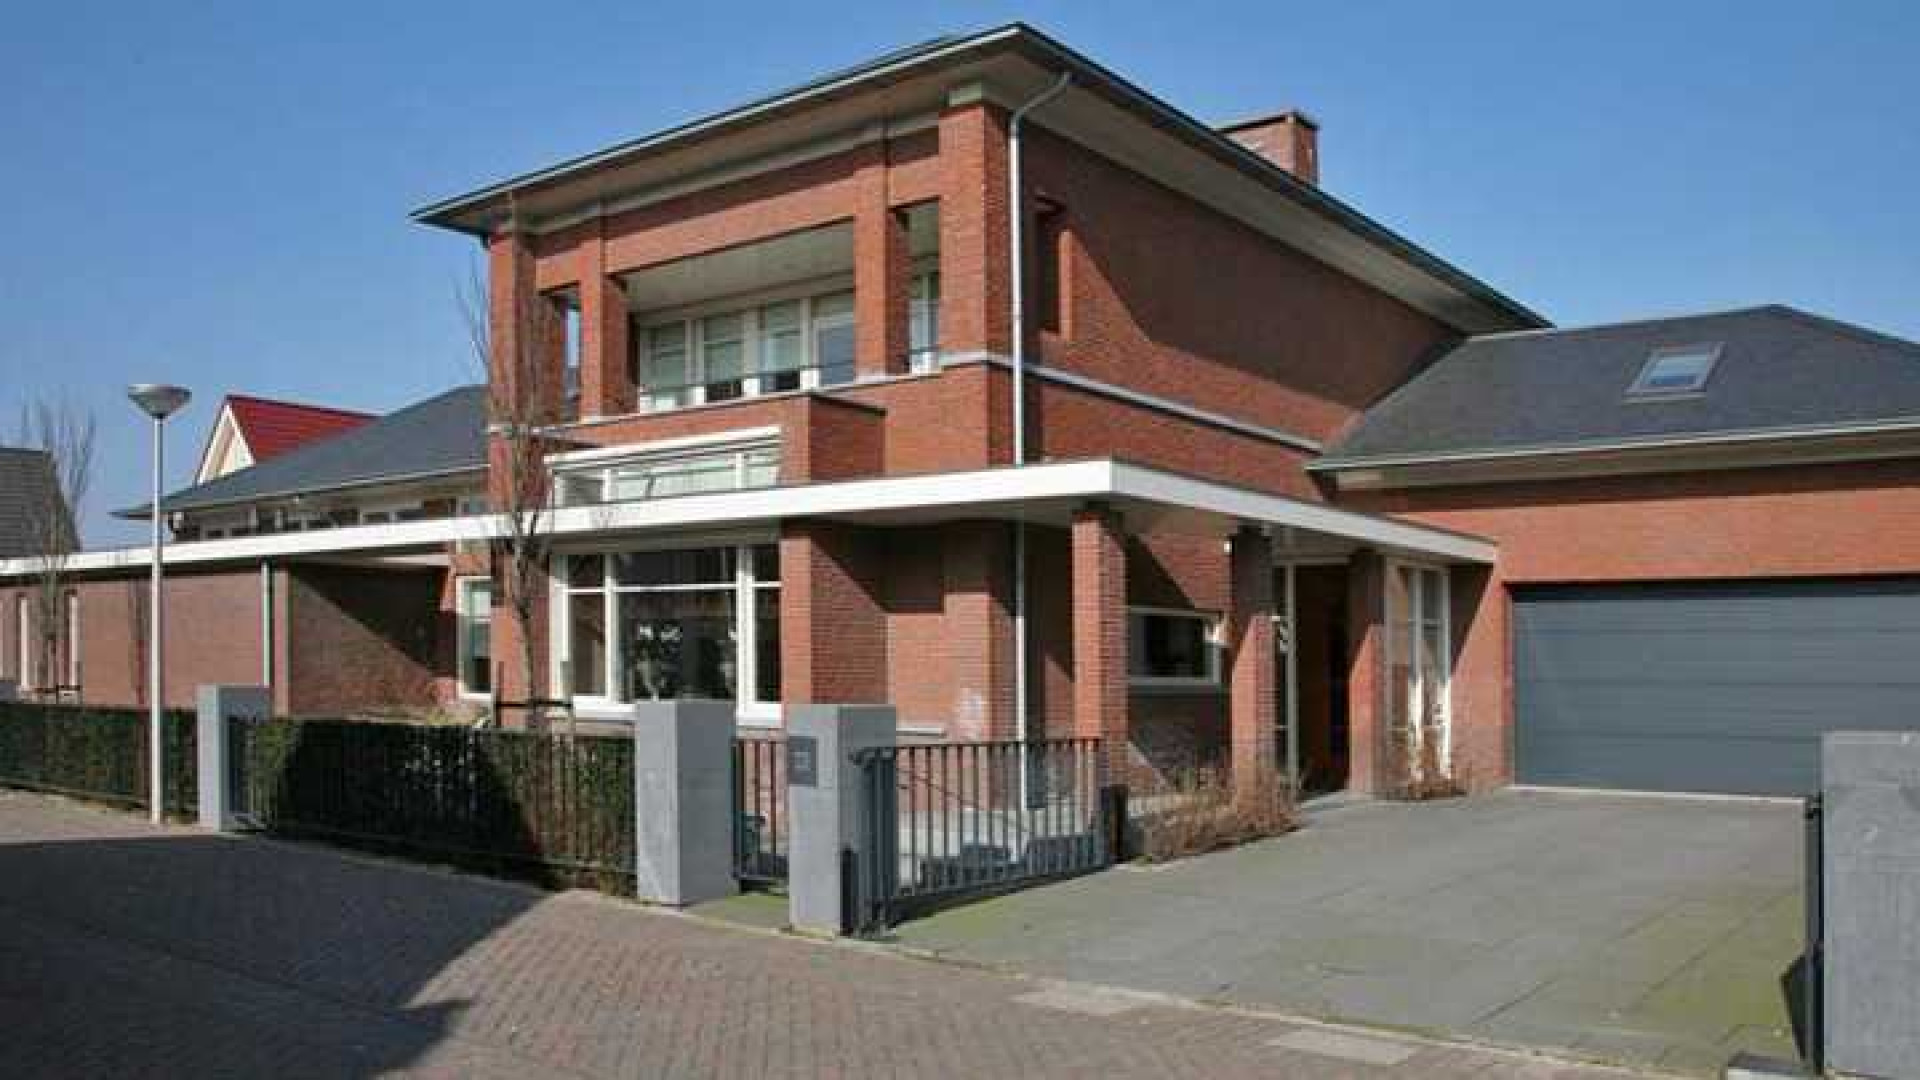 Yolanthe en Wesley Sneijder verhuist naar deze villa in Vleuten. Zie foto's